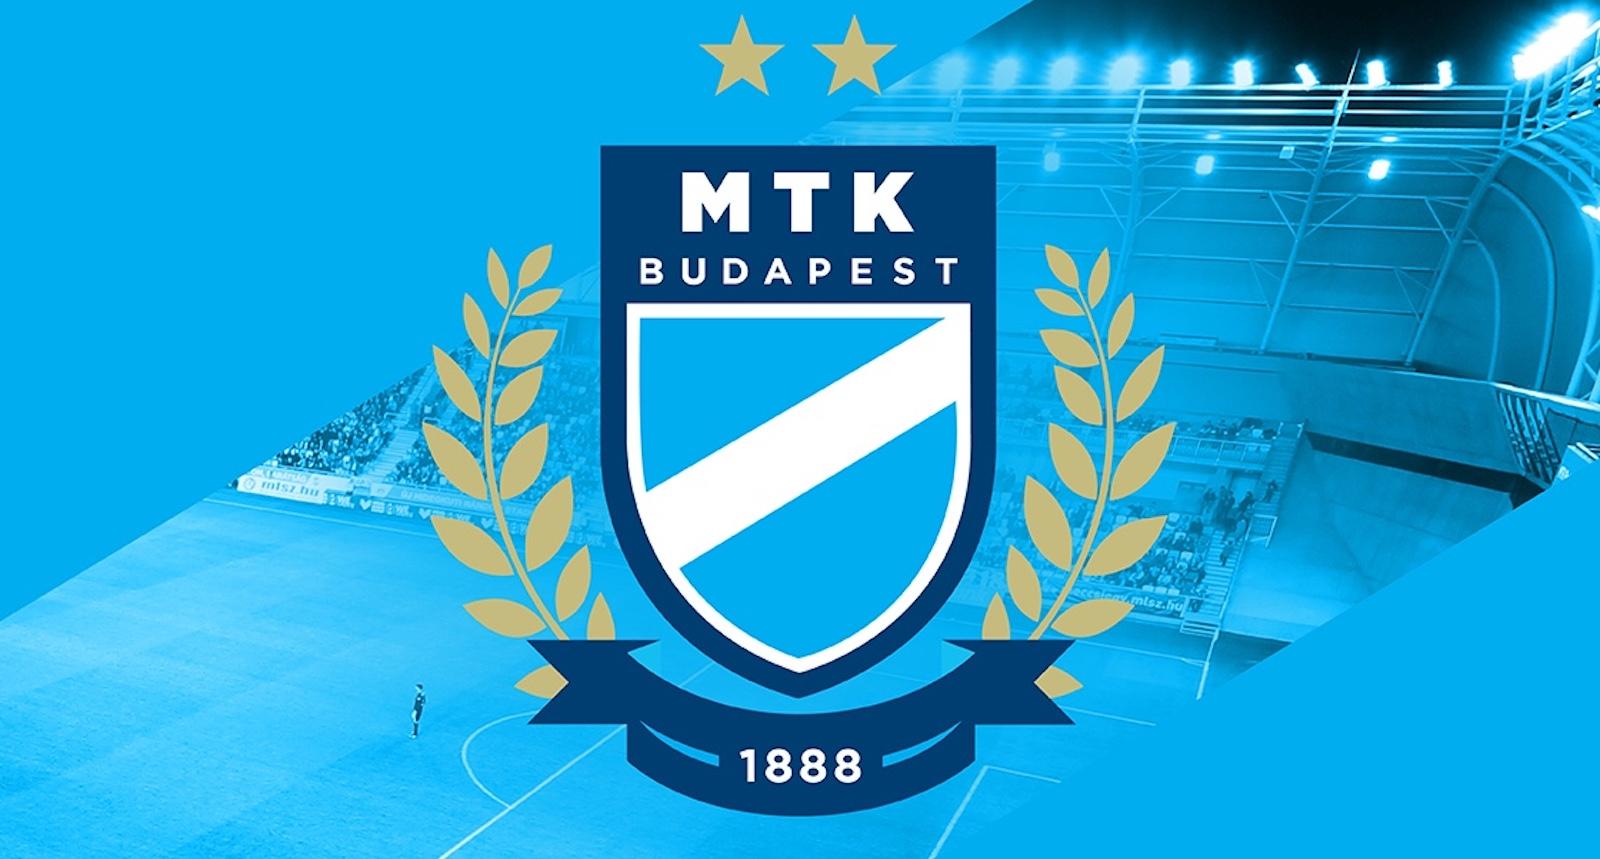 Ezen a napon alakult meg az MTK, a Magyar Testgyakorlók Köre